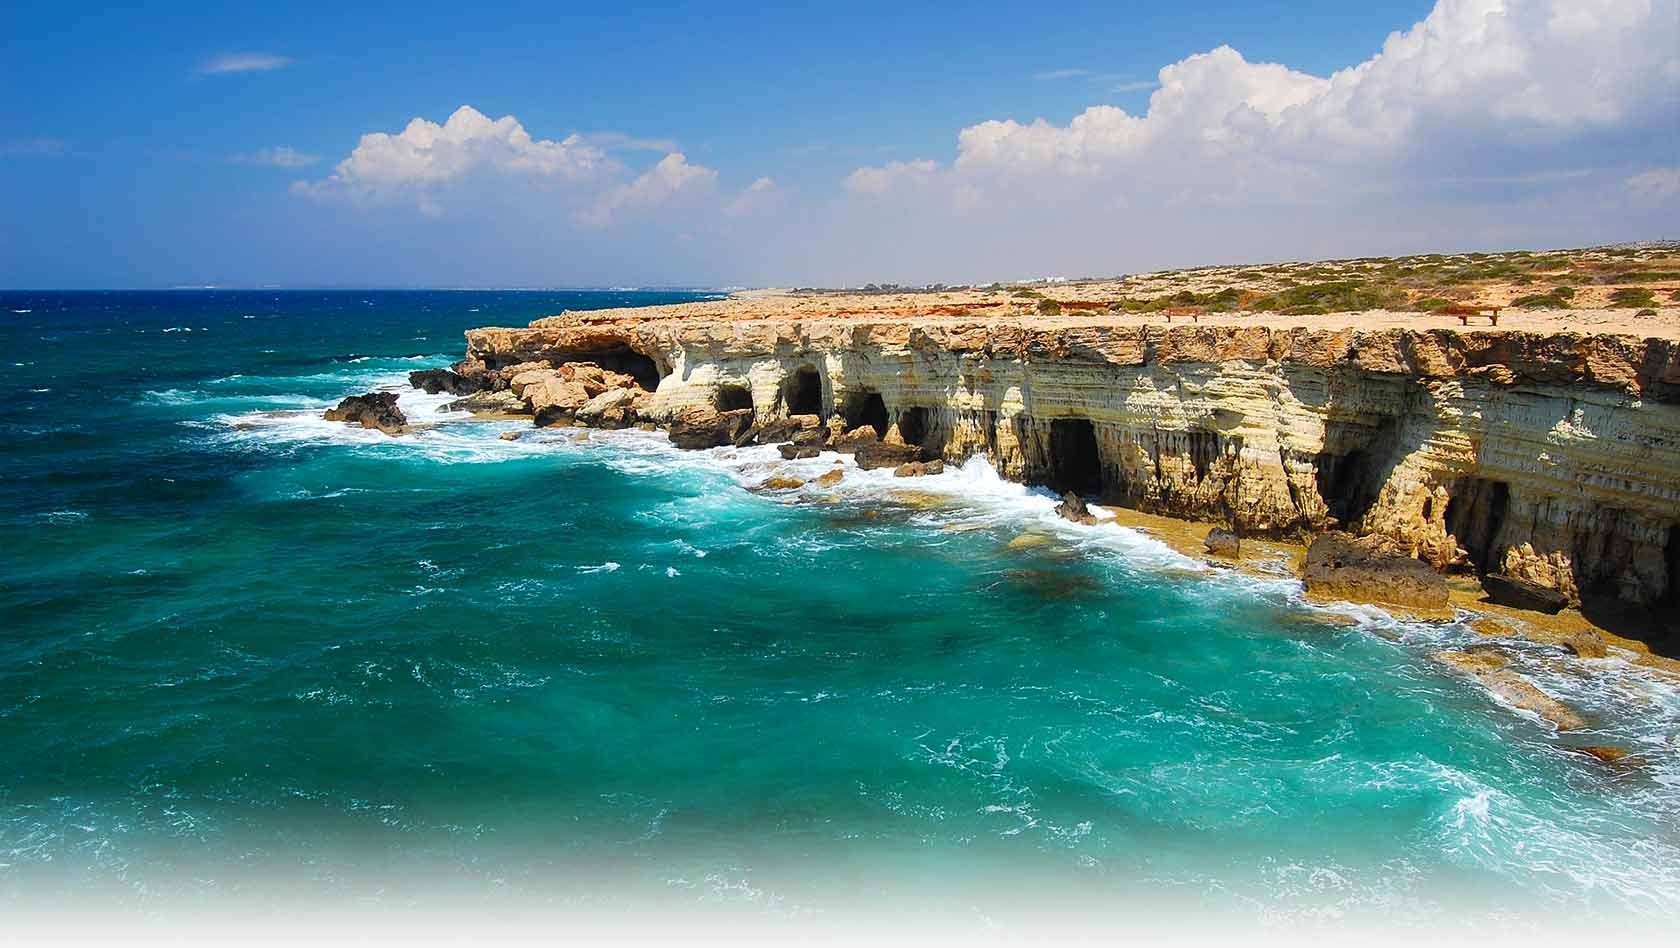 Министерство энергетики, торговли, промышленности и туризма Кипра объявило о начале конкурсного отбора по выбору единственного лицензиата, который займется строительством первого на Кипре казино курортного типа